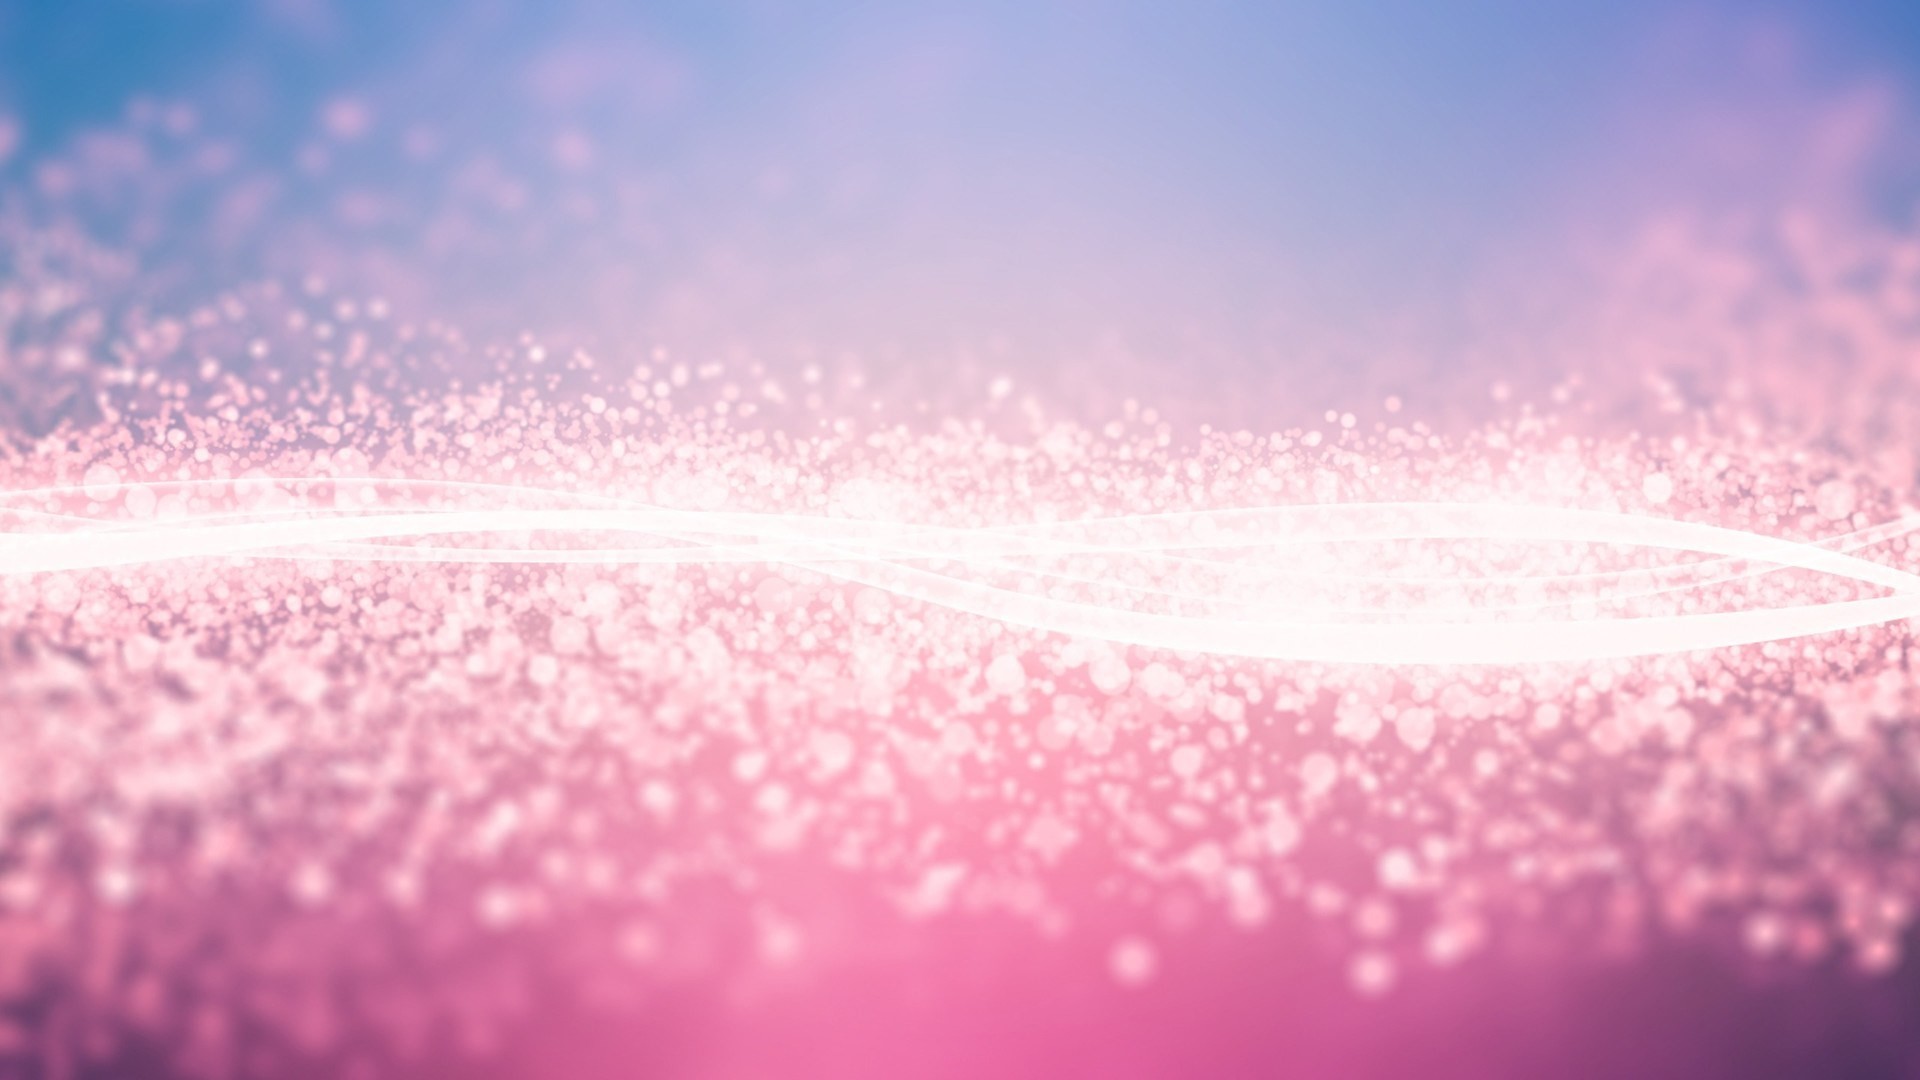 1920x1080 pink glitter wallpaper hd for desktop | ololoshka | Pinterest | Pink  glitter wallpaper